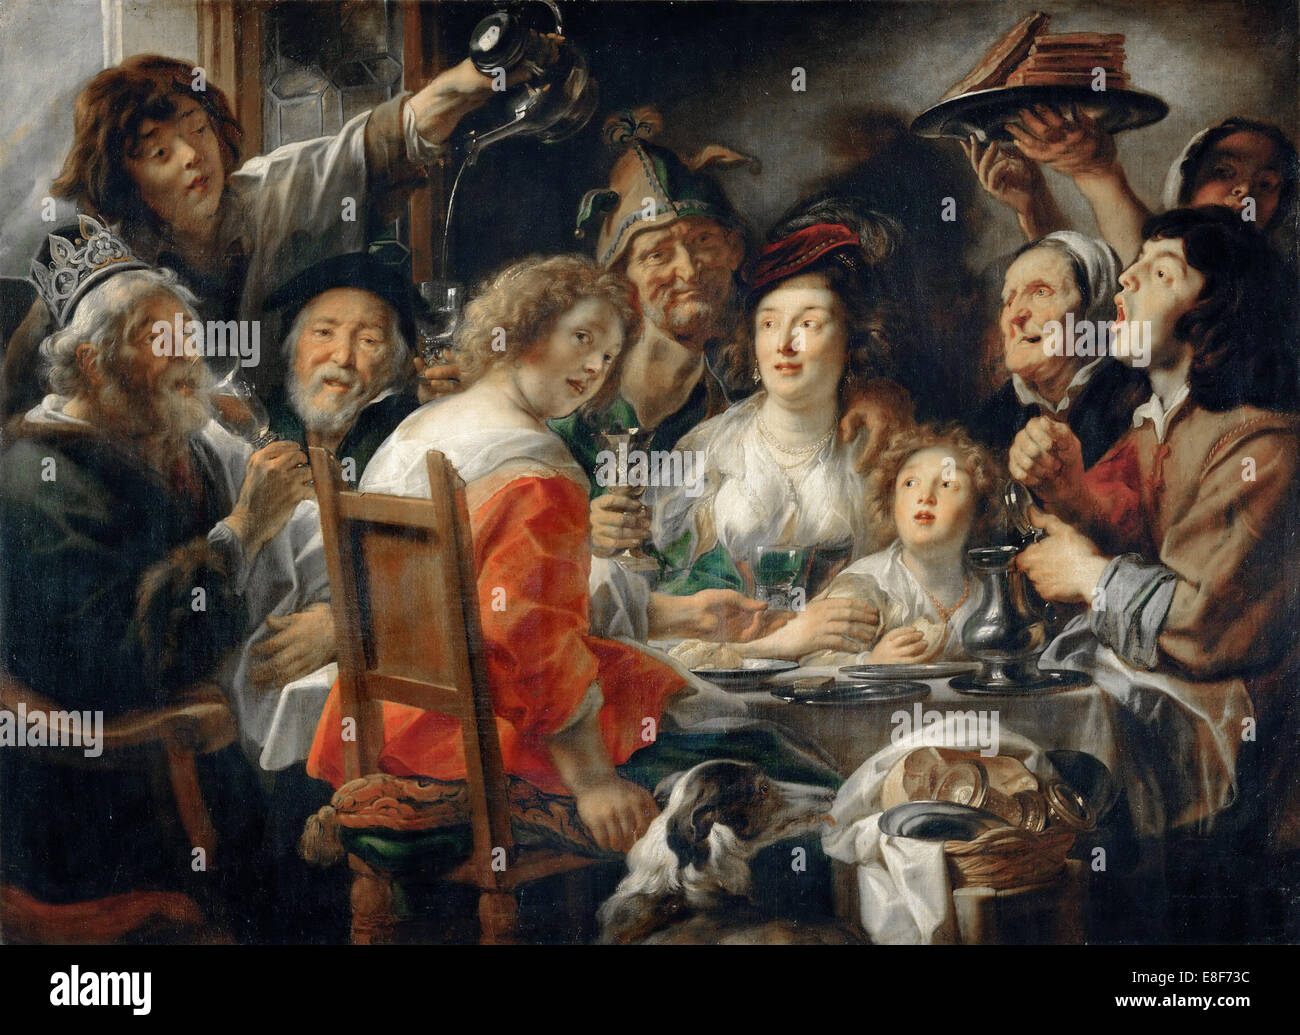 Le roi boit, ou repas de famille en la fête de l'Epiphanie. Artiste : Jordaens, Jacob (1593-1678) Banque D'Images